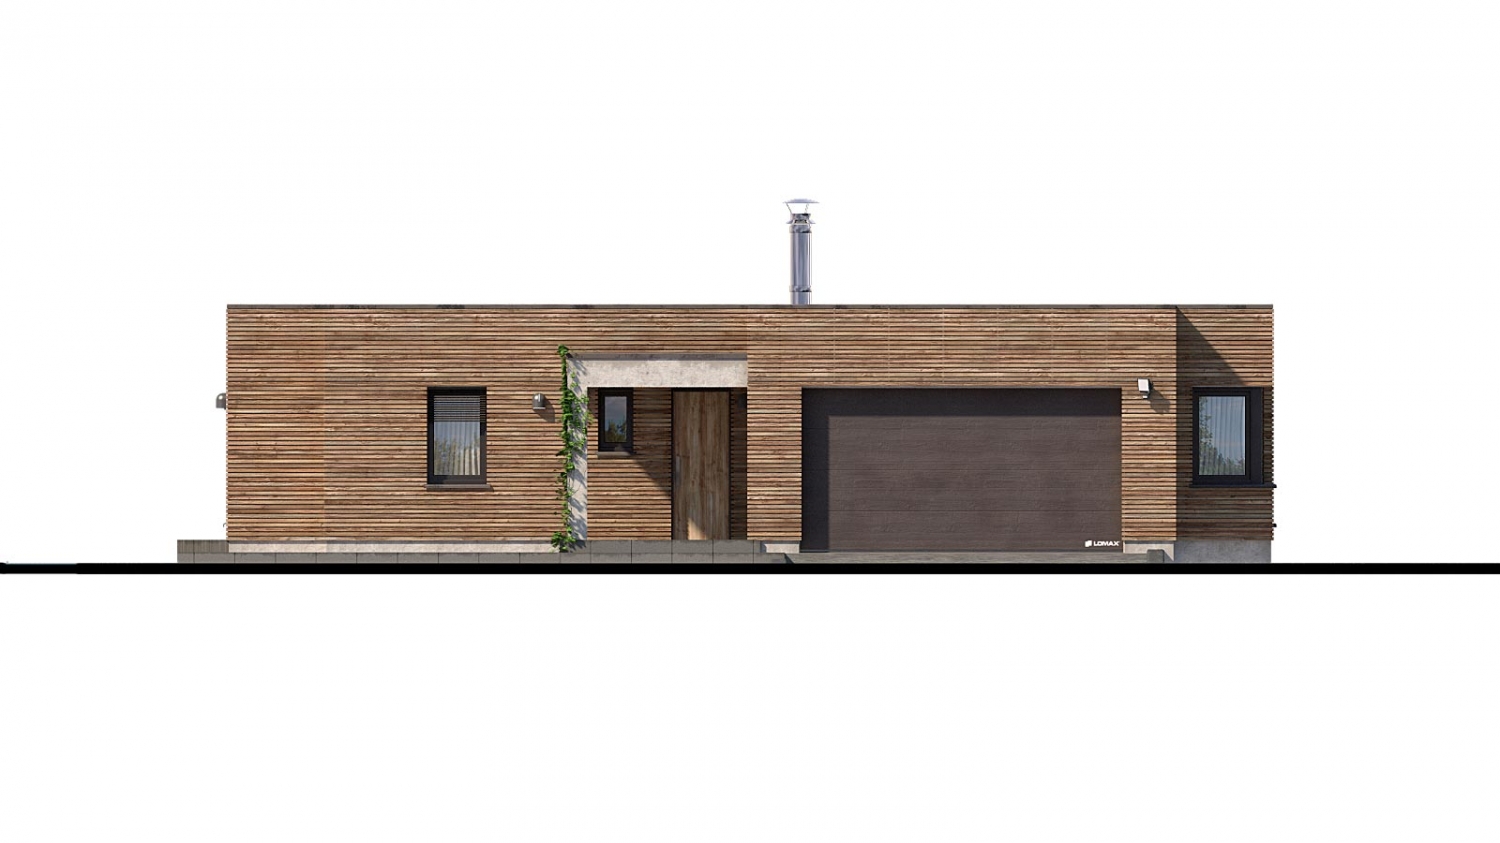 Zrkadlový pohľad 1. - Luxusní 4-pokojový zděný dům s dvojgaráží, plochou rovnou střechou.